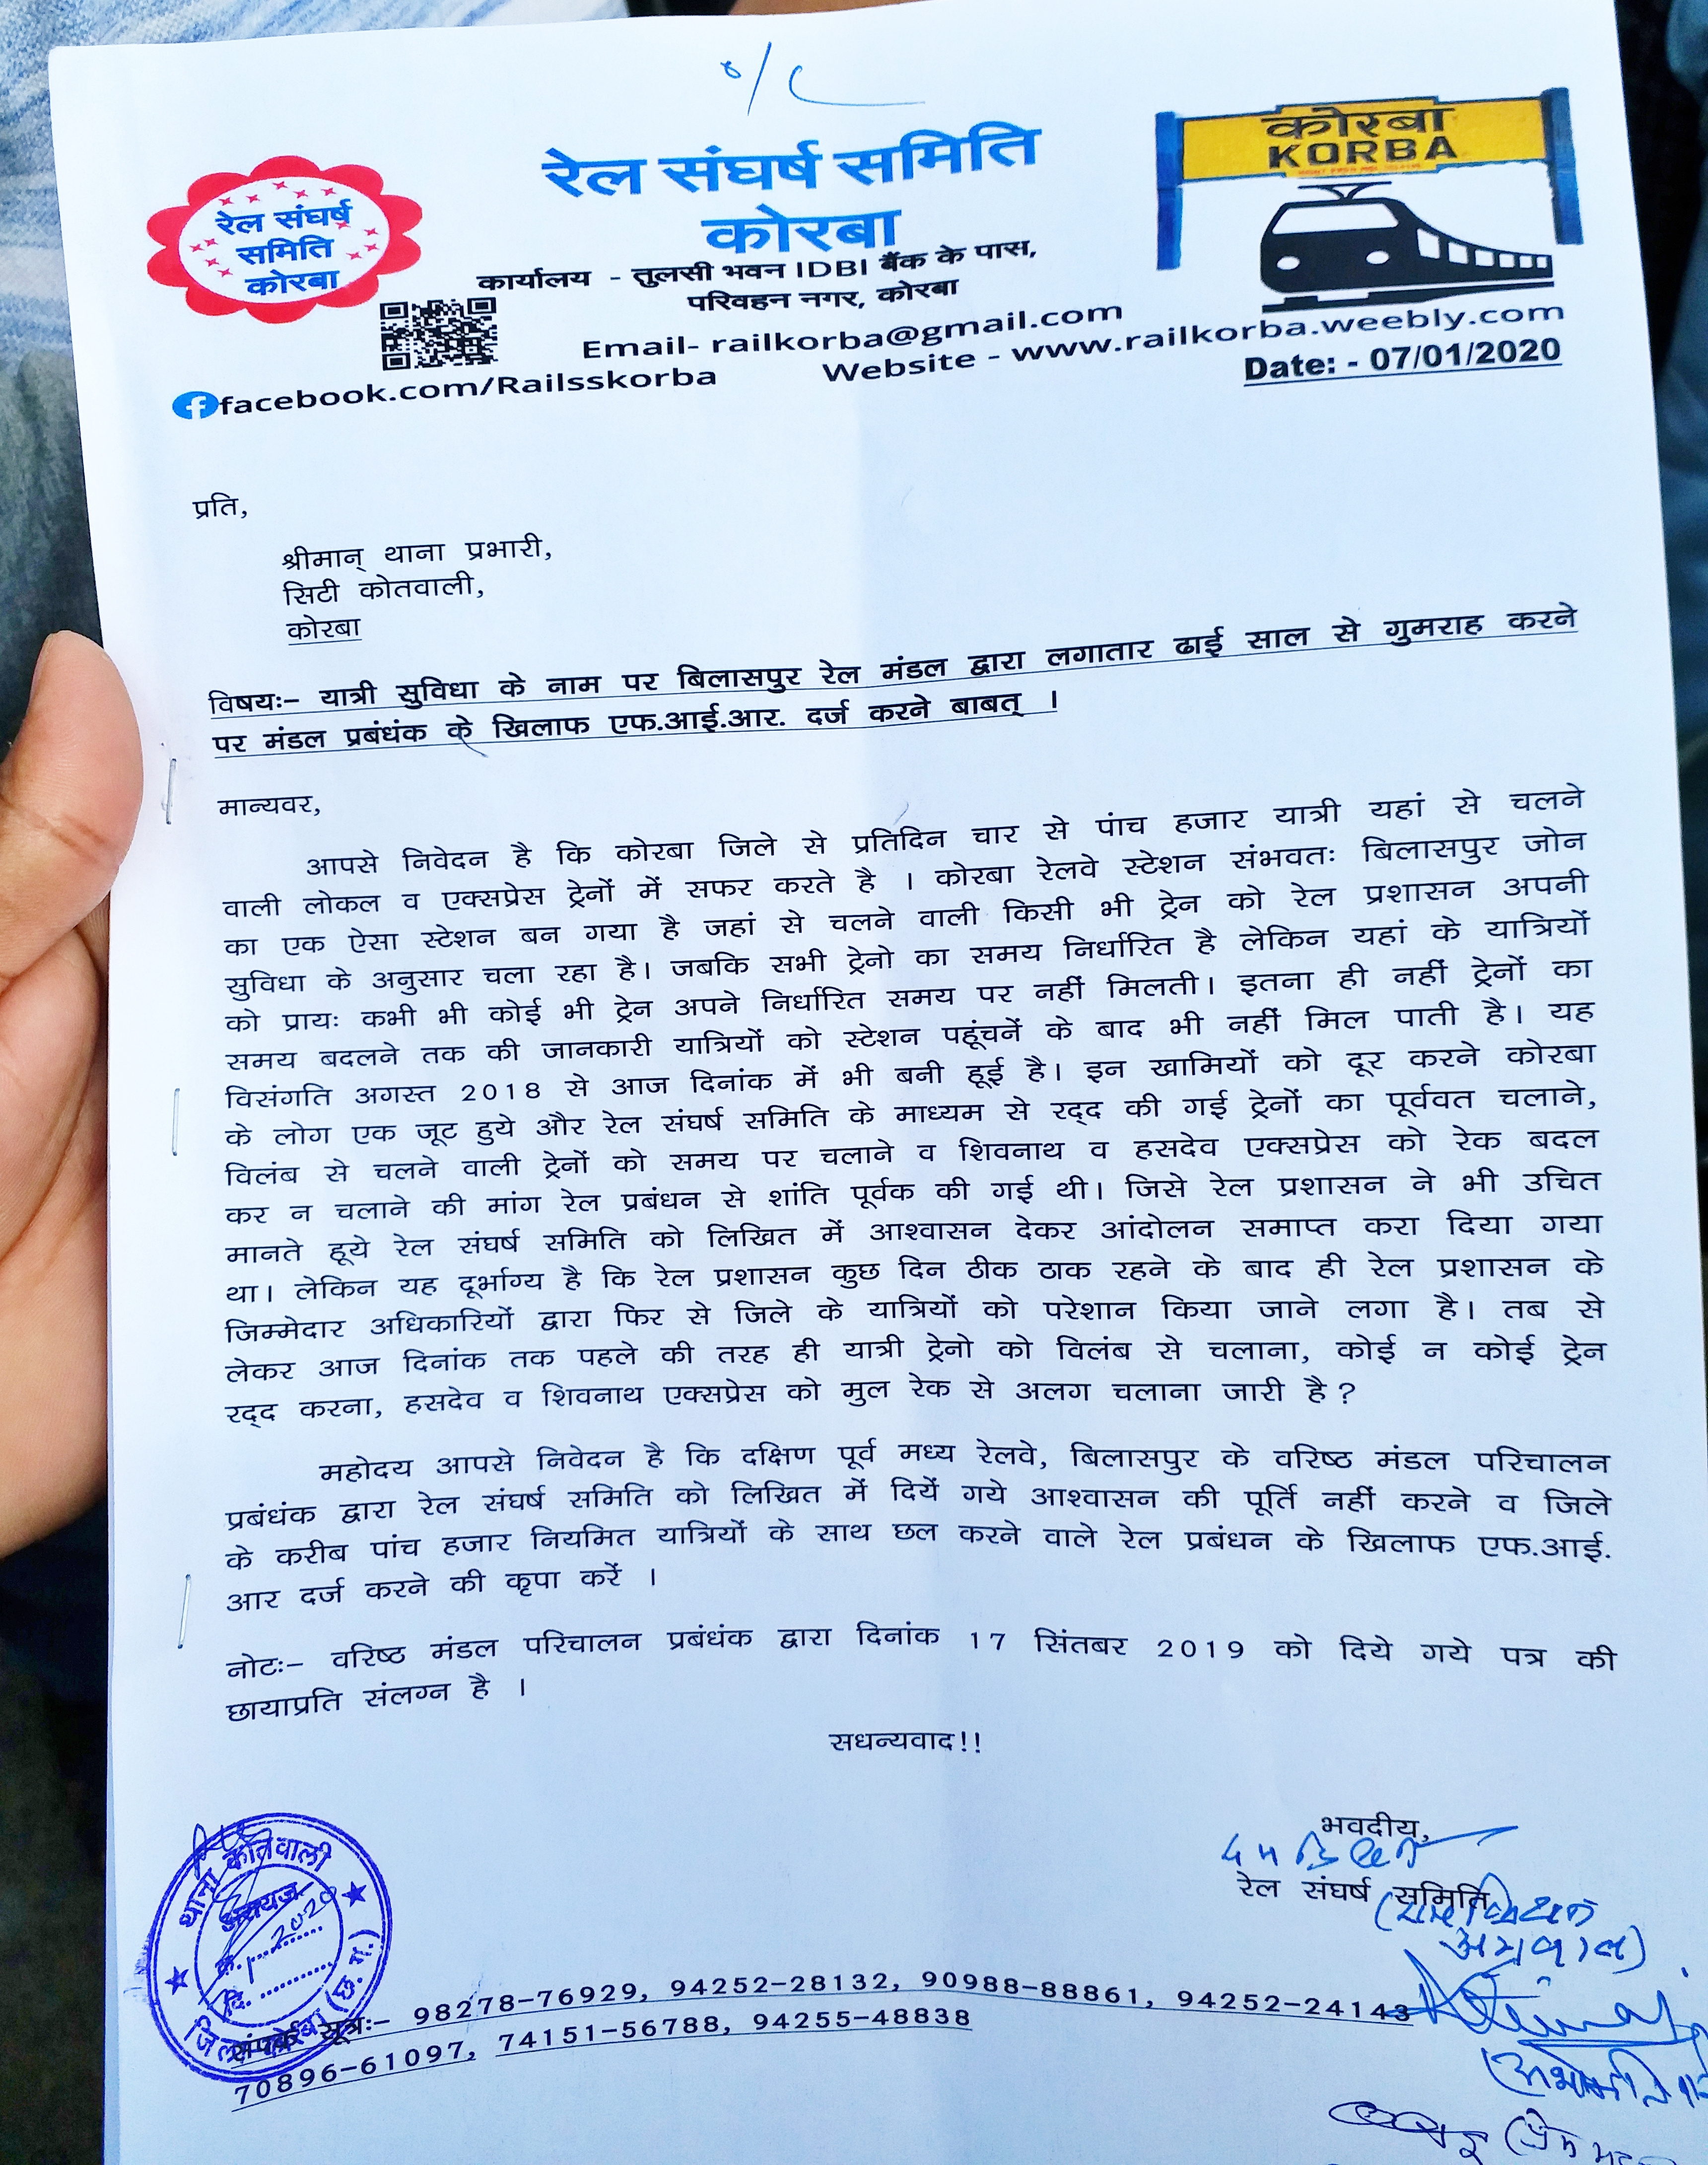 Rail Sangharsh Samithi submitted memorandum to police for filing FIR in korba